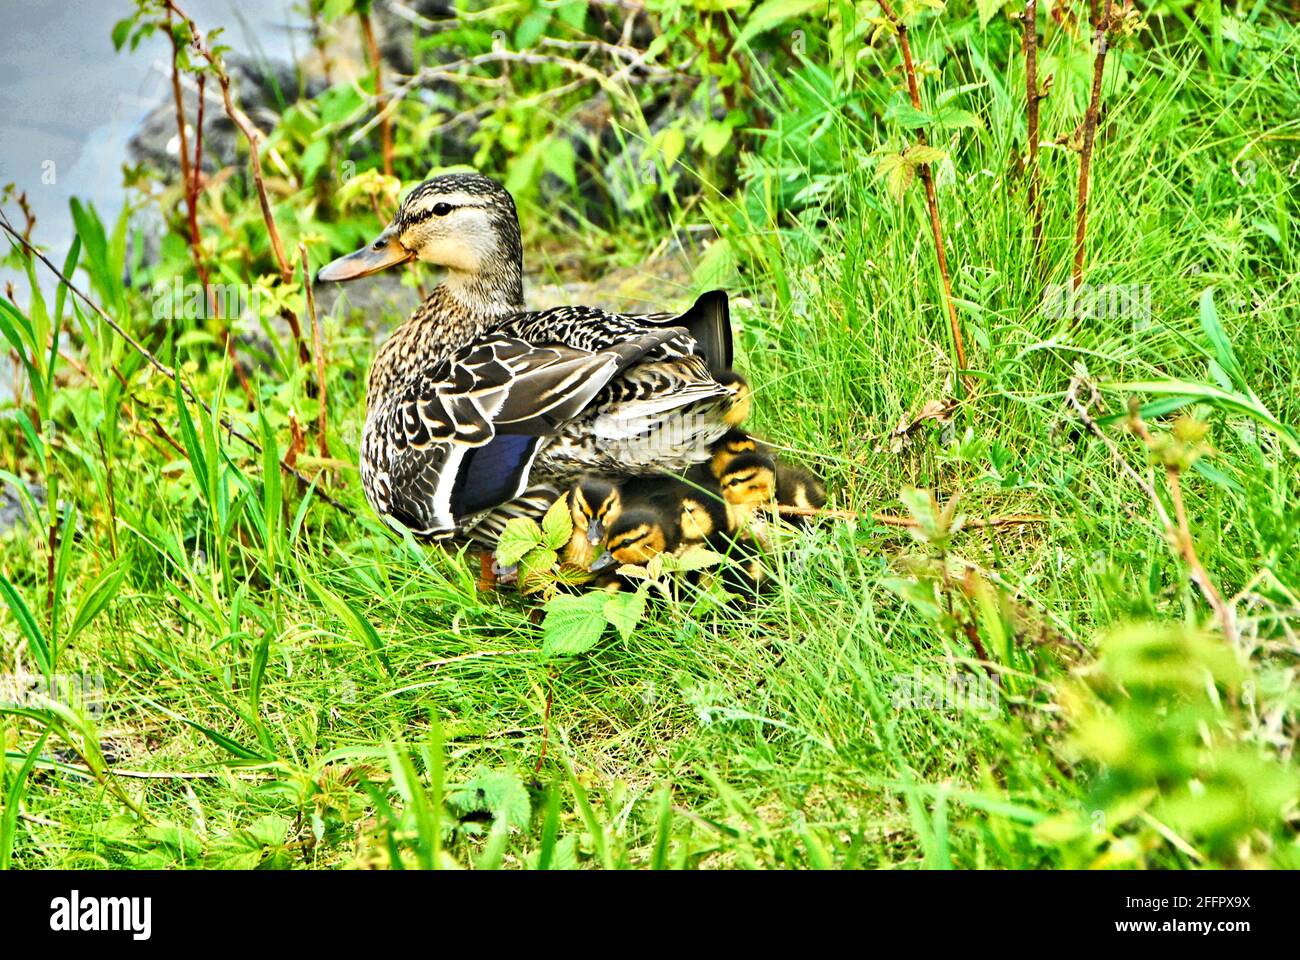 Après une baignade, une mère canard est assise sur l'herbe et soulève son corps pour que tous ses bébés puissent se cacher sous ses plumes et se réchauffer. Banque D'Images